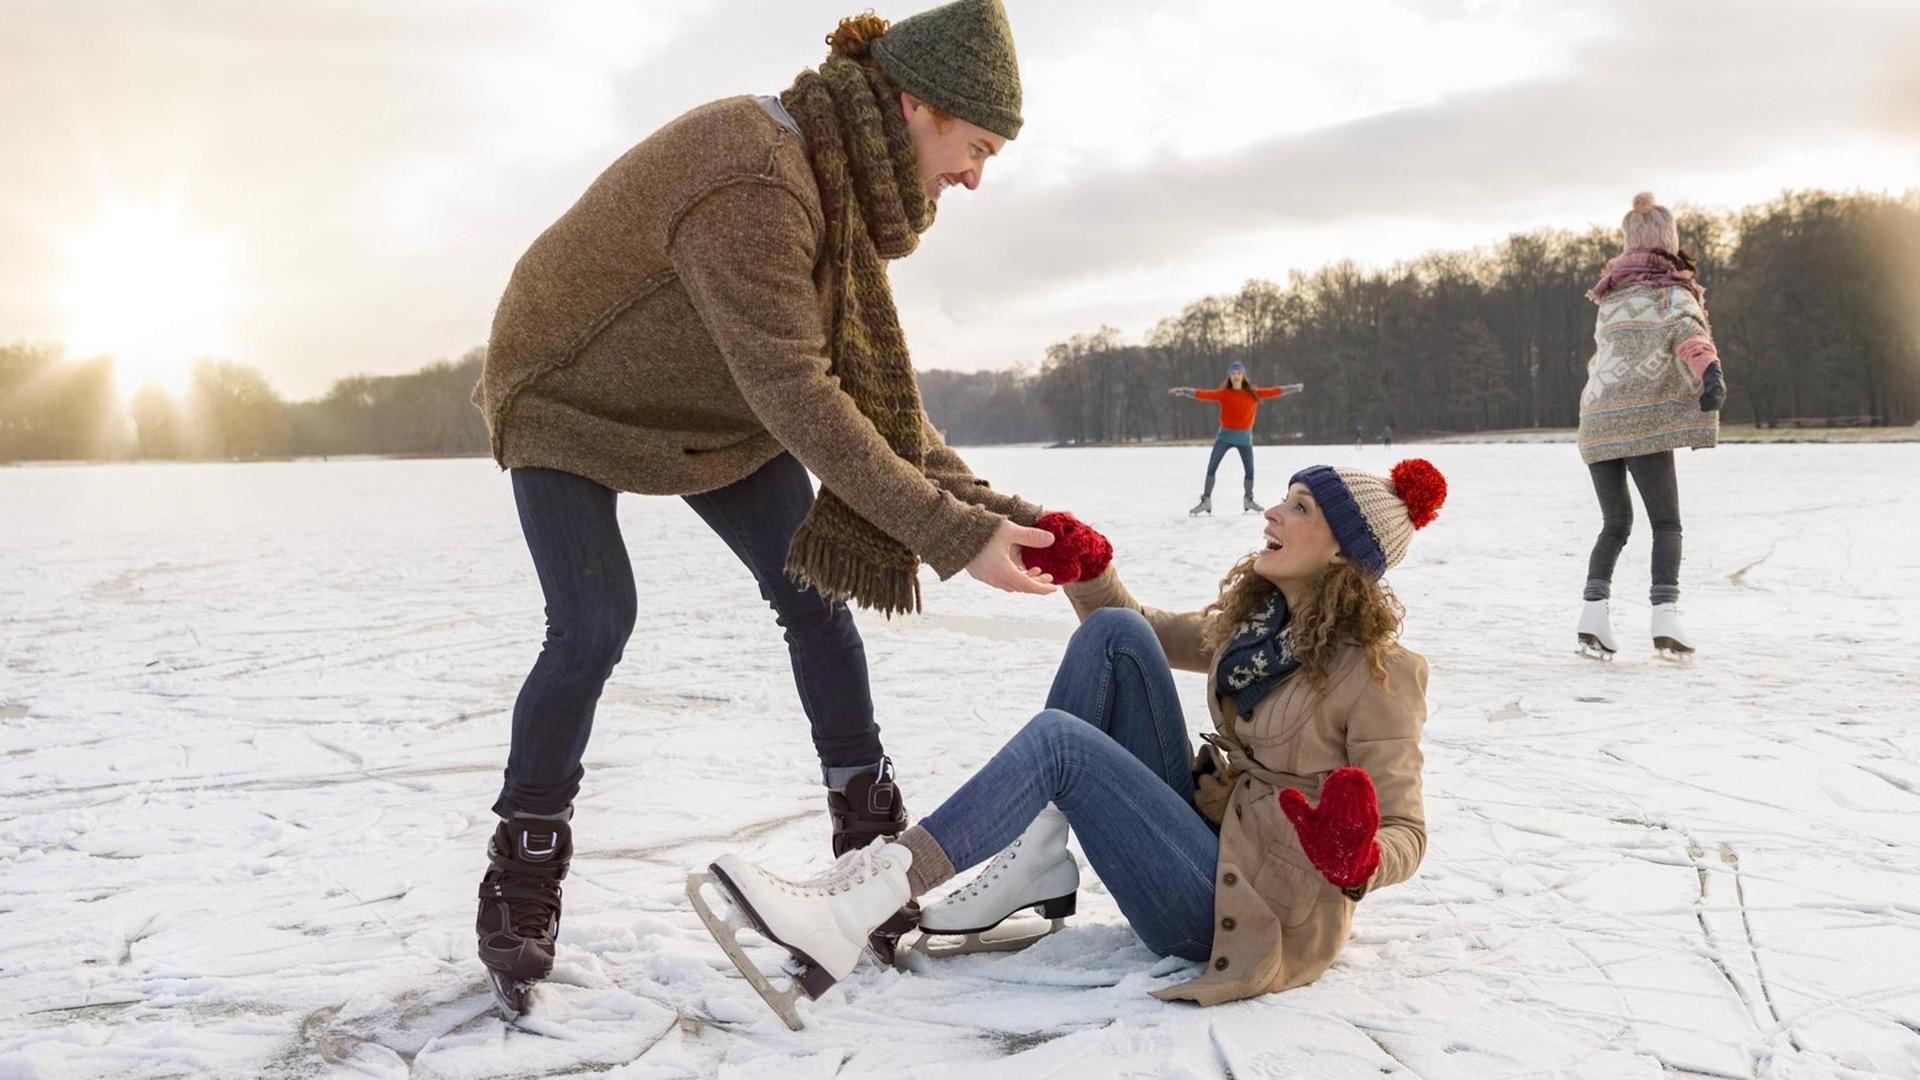 Eine Frau stürzt beim Eislaufen auf denn Boden und ein Mann hilft ihr gerne wieder auf die Beine.